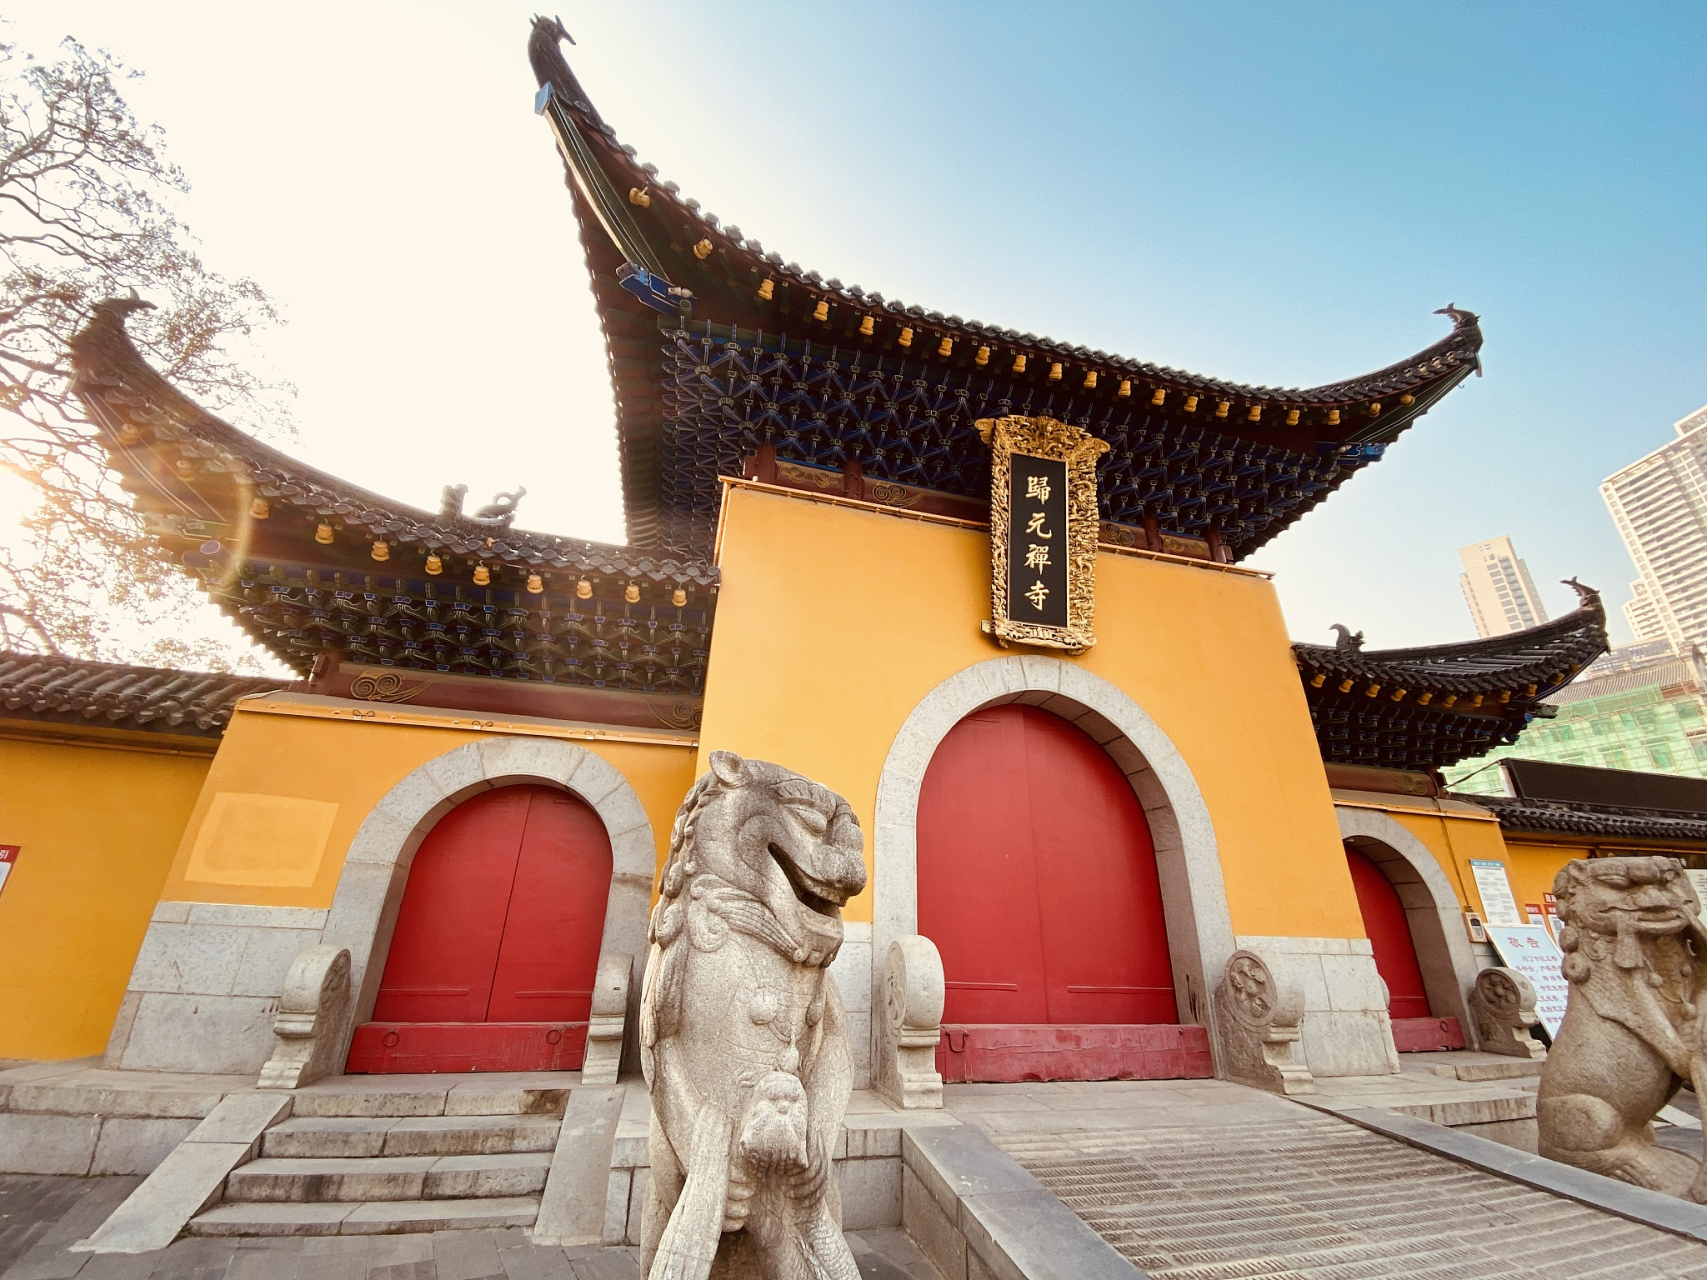 归元禅寺是位于中国湖北省武汉市汉阳区的一座著名的佛教禅寺,是禅宗